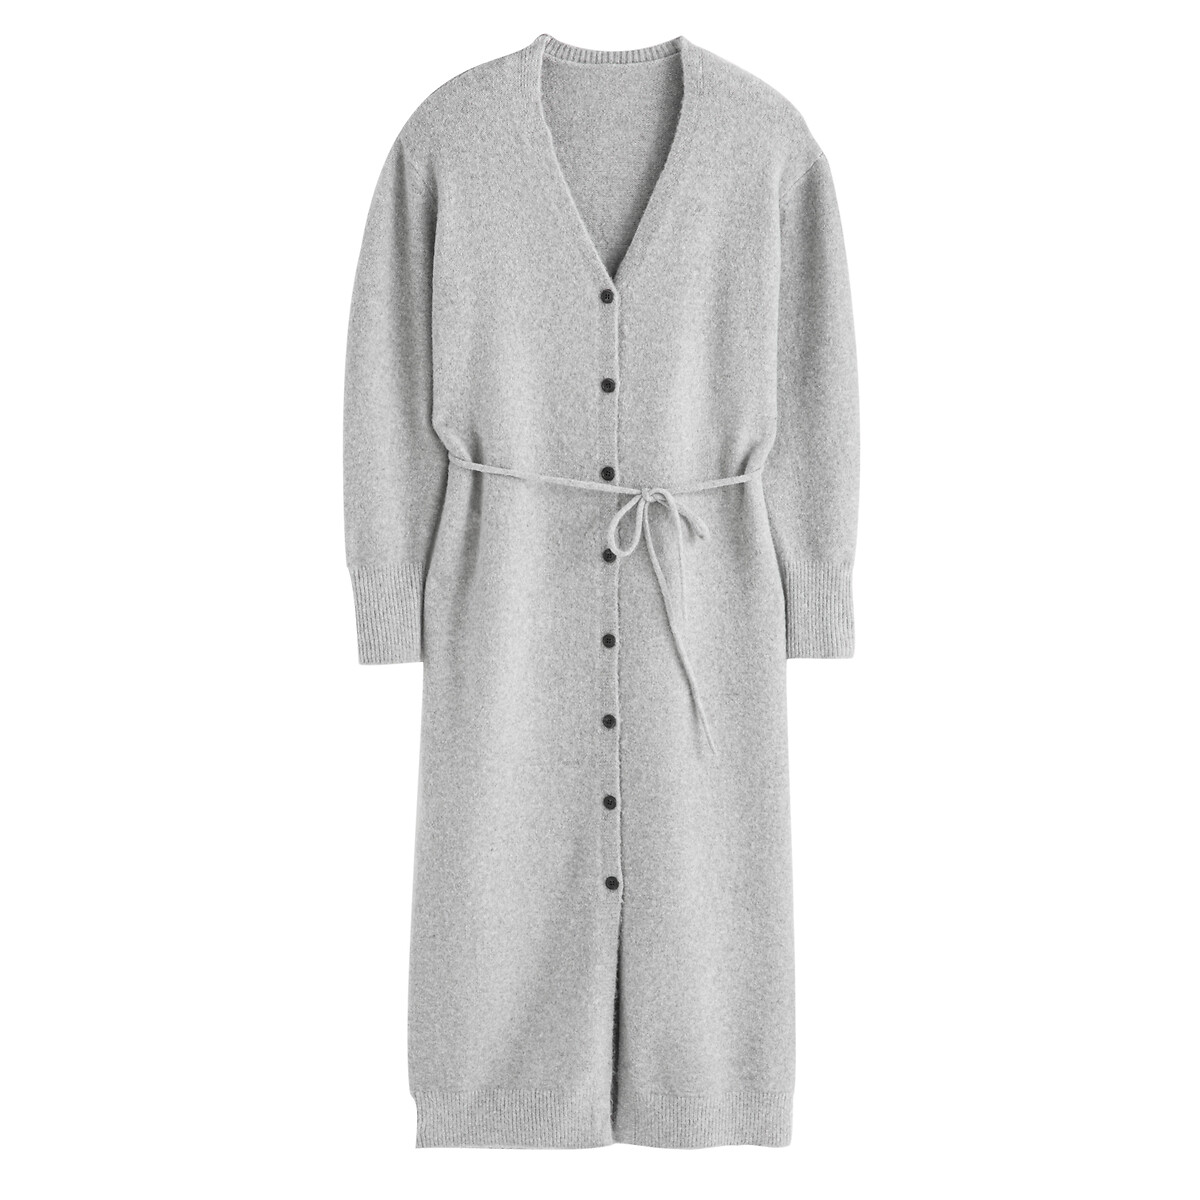 Платье-пуловер С V-образным вырезом на пуговицах S серый LaRedoute, размер S - фото 5